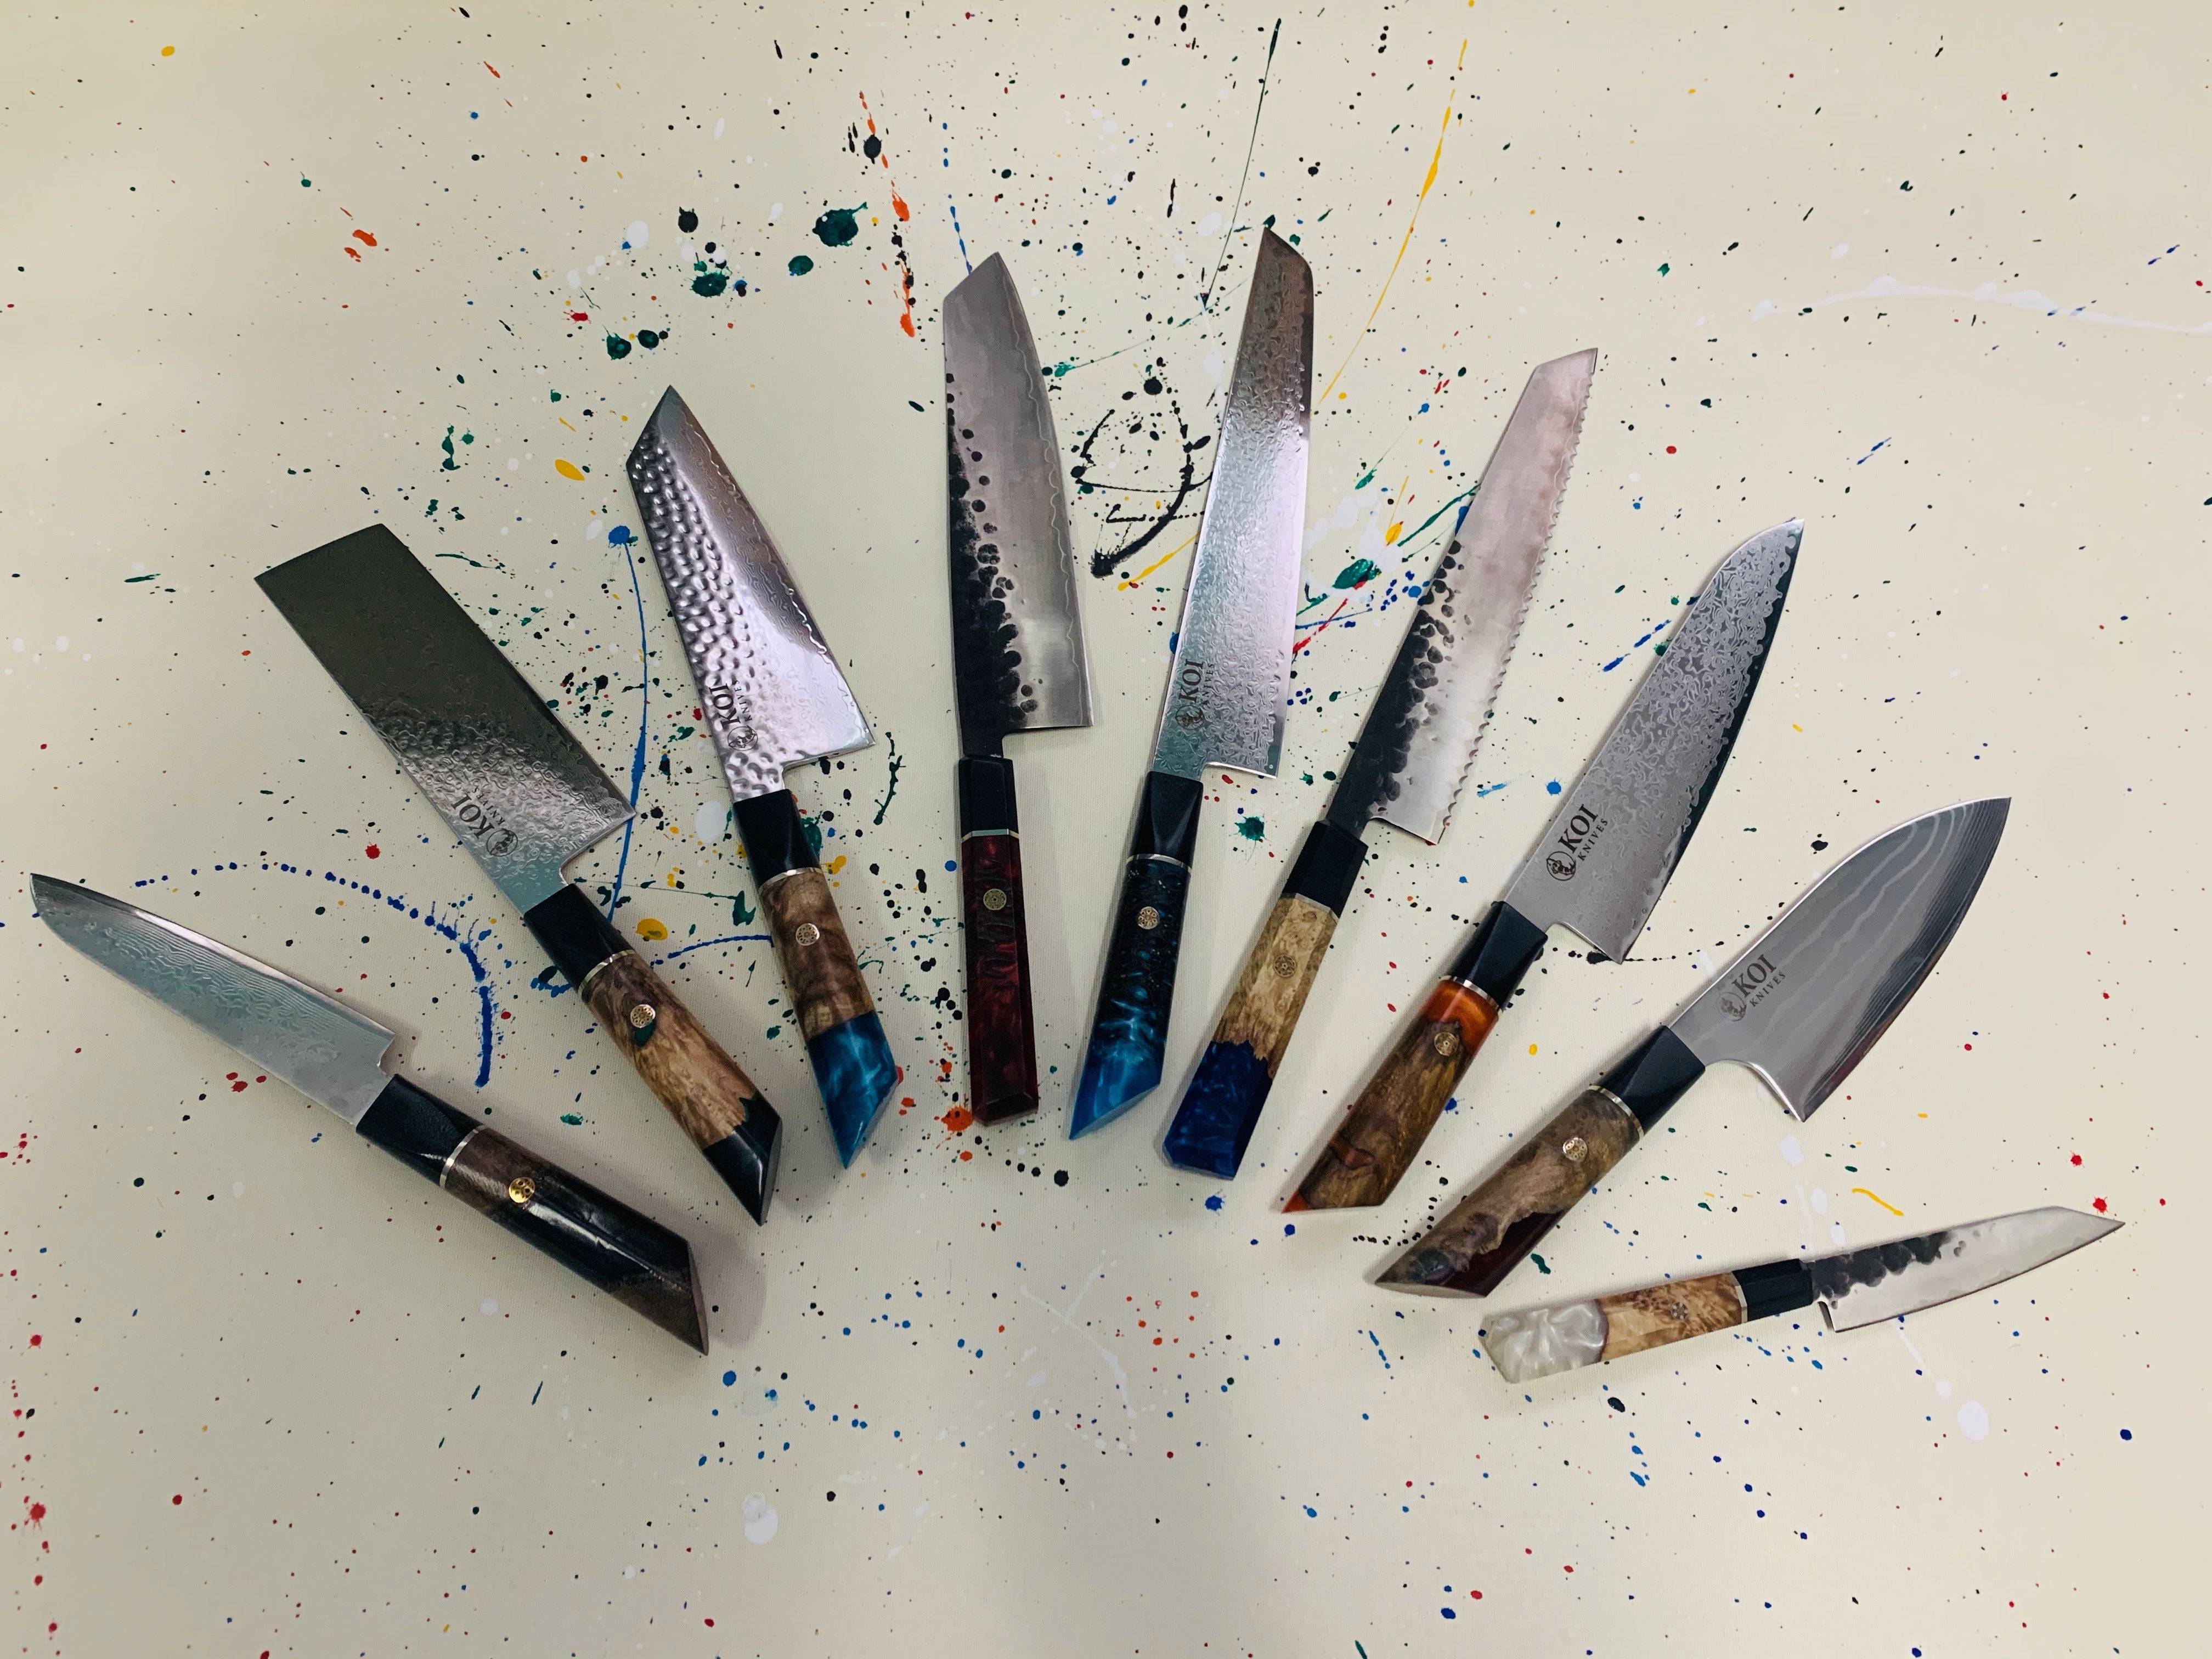 The Purpose of Utility Knife - KOI ARTISAN